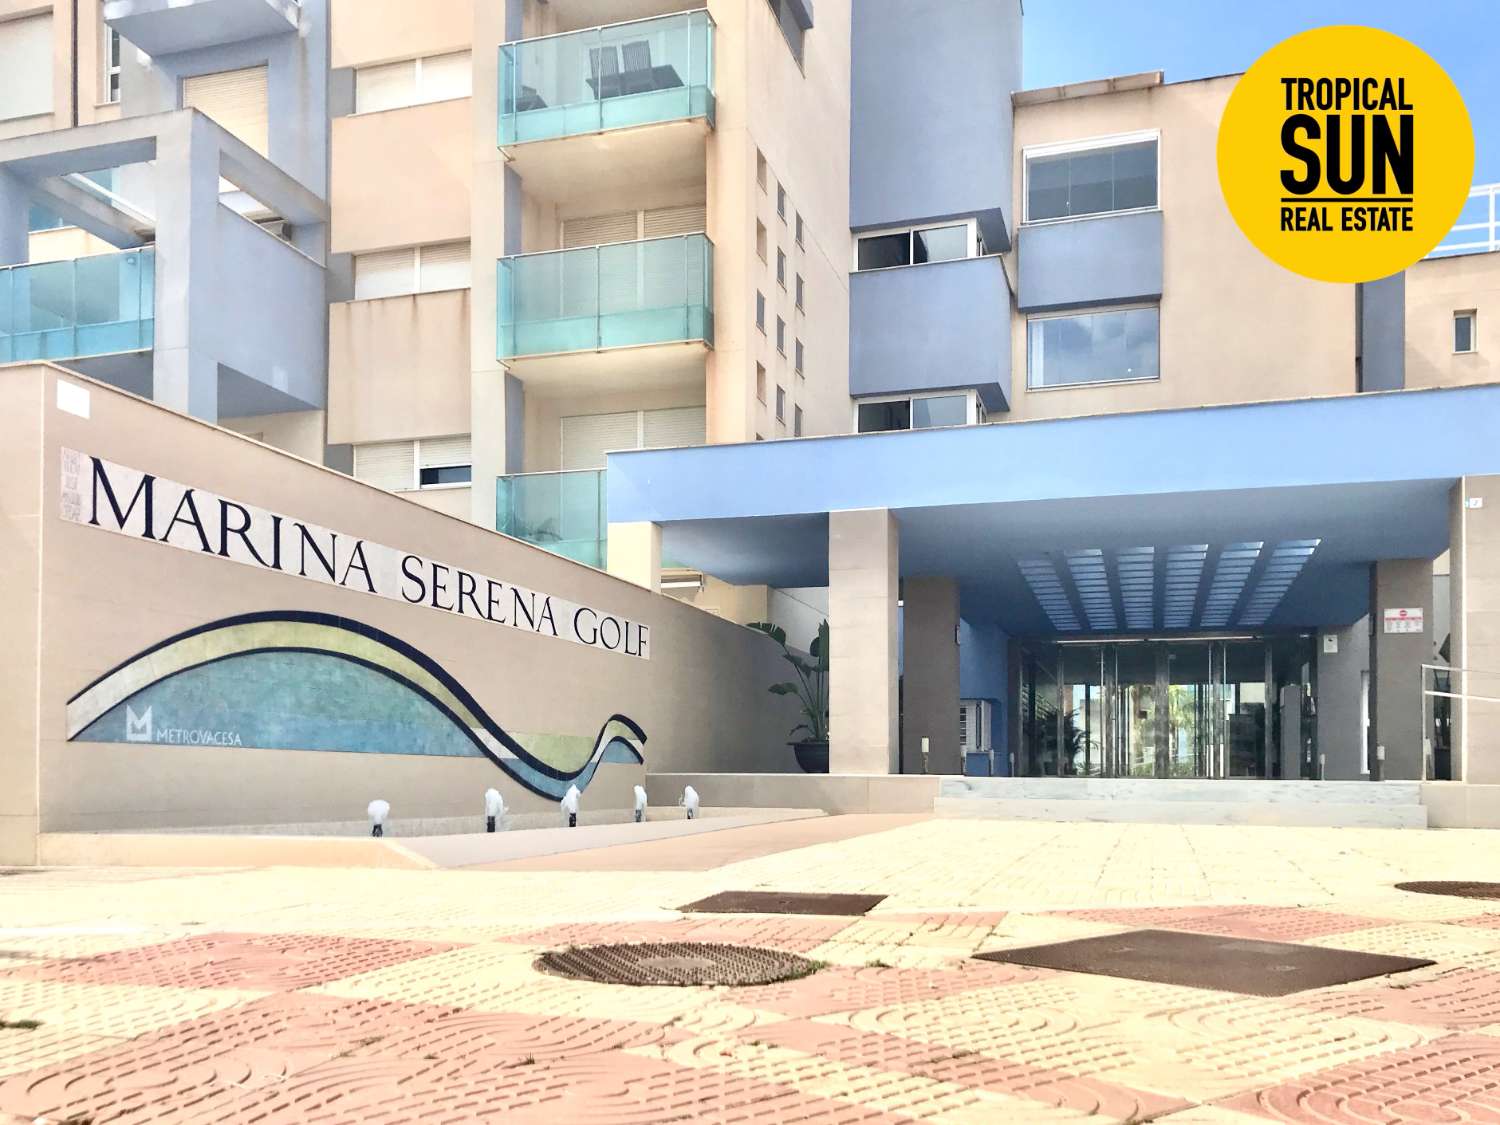 Urbanització Marina Serena Golf: el Lloc Perfecte per a Viure. Descobreix aquest fantàstic àtic tipus dúplex.